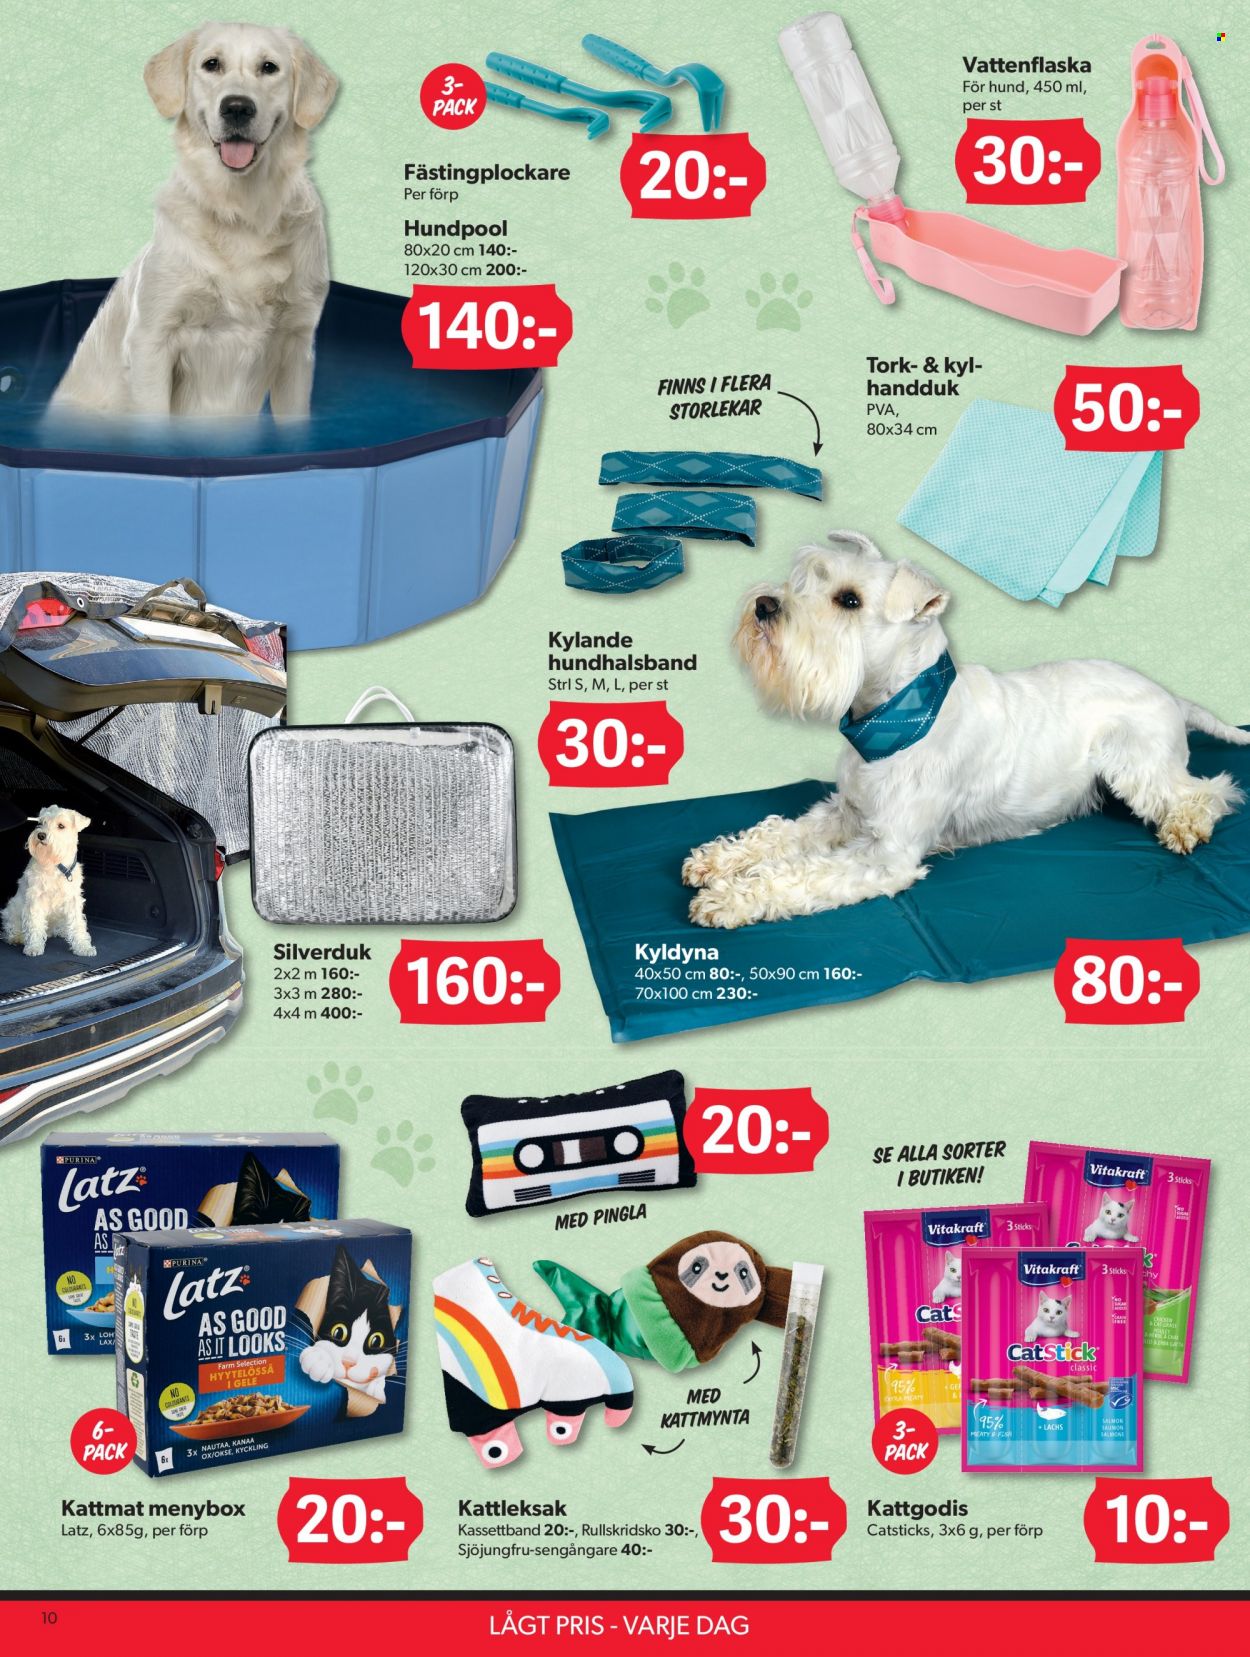 thumbnail - DollarStore reklamblad - 20/6 2022 - 20/7 2022 - varor från reklamblad - lax, vattenflaska, handduk, hund, Purina, kattmat. Sida 10.